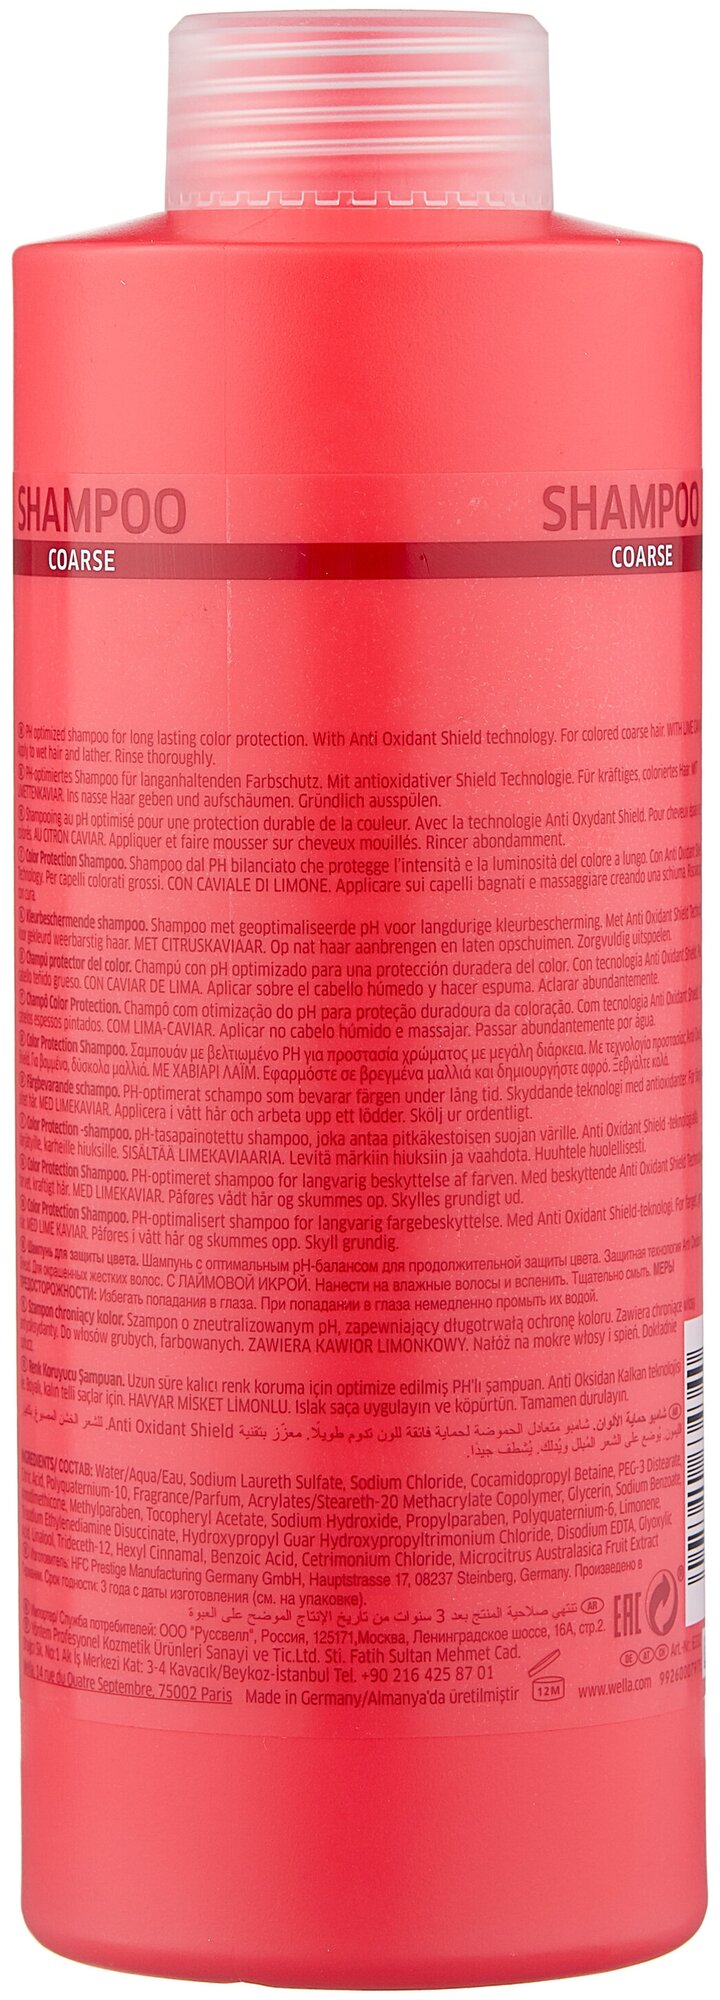 Wella Professionals Шампунь для защиты цвета окрашенных жестких волос, 250 мл (Wella Professionals, ) - фото №2